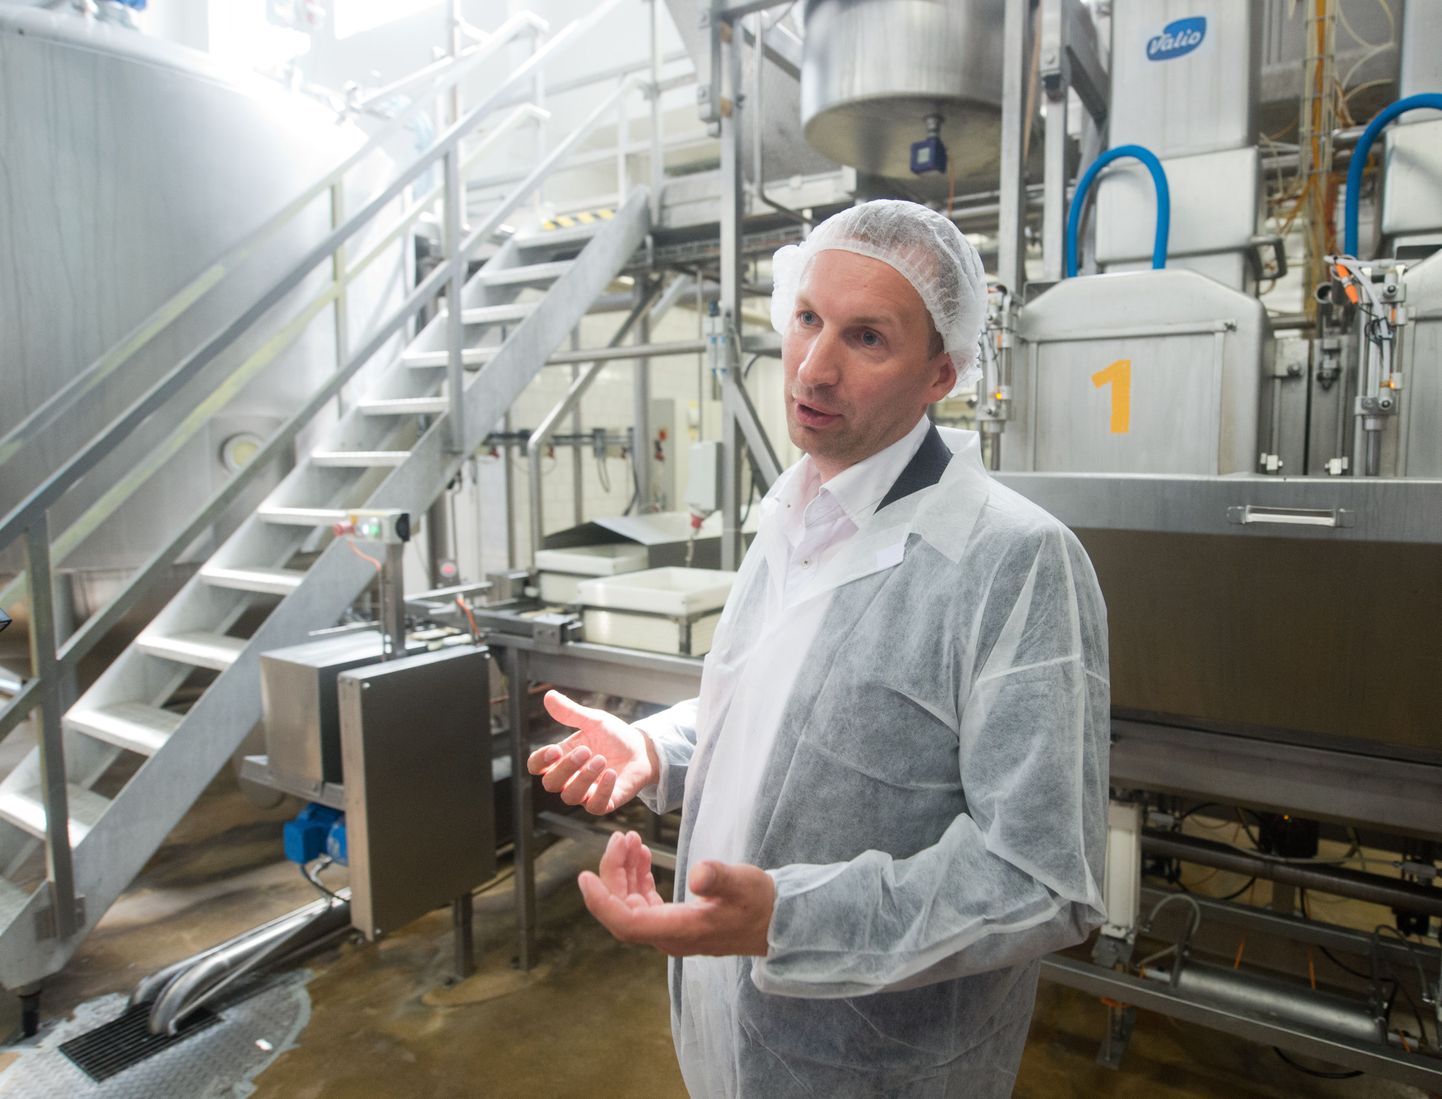 «Kui üks ettevõte maksab teistega võrreldes rohkem, siis ta läheb lihtsalt pankrotti,» ütles Valio Eesti tegevdirektor Maido Solovjov, kelle sõnul on piima madal kokkuostuhind avatud turu paratamatus.